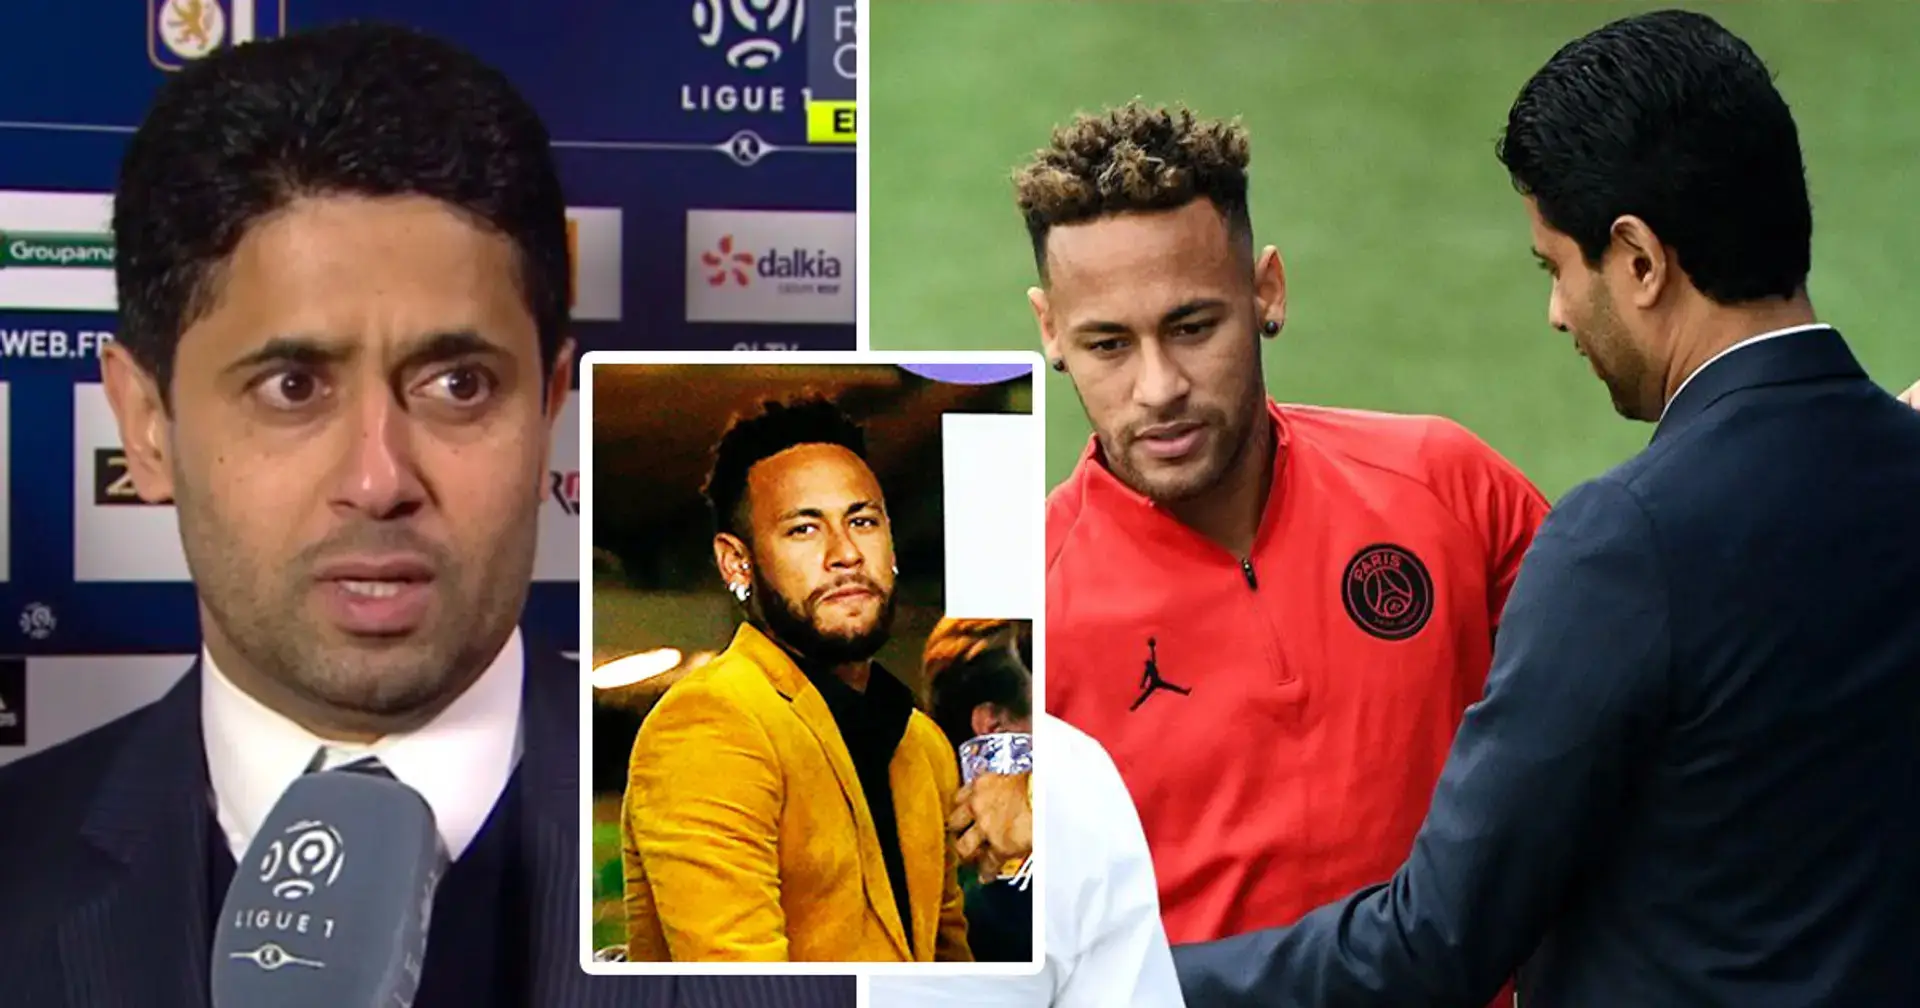 'Algunos jugadores llegarán, algunos jugadores se irán': Al-Khelaifi arroja una respuesta incierta a las preguntas sobre el futuro de Neymar en el PSG 